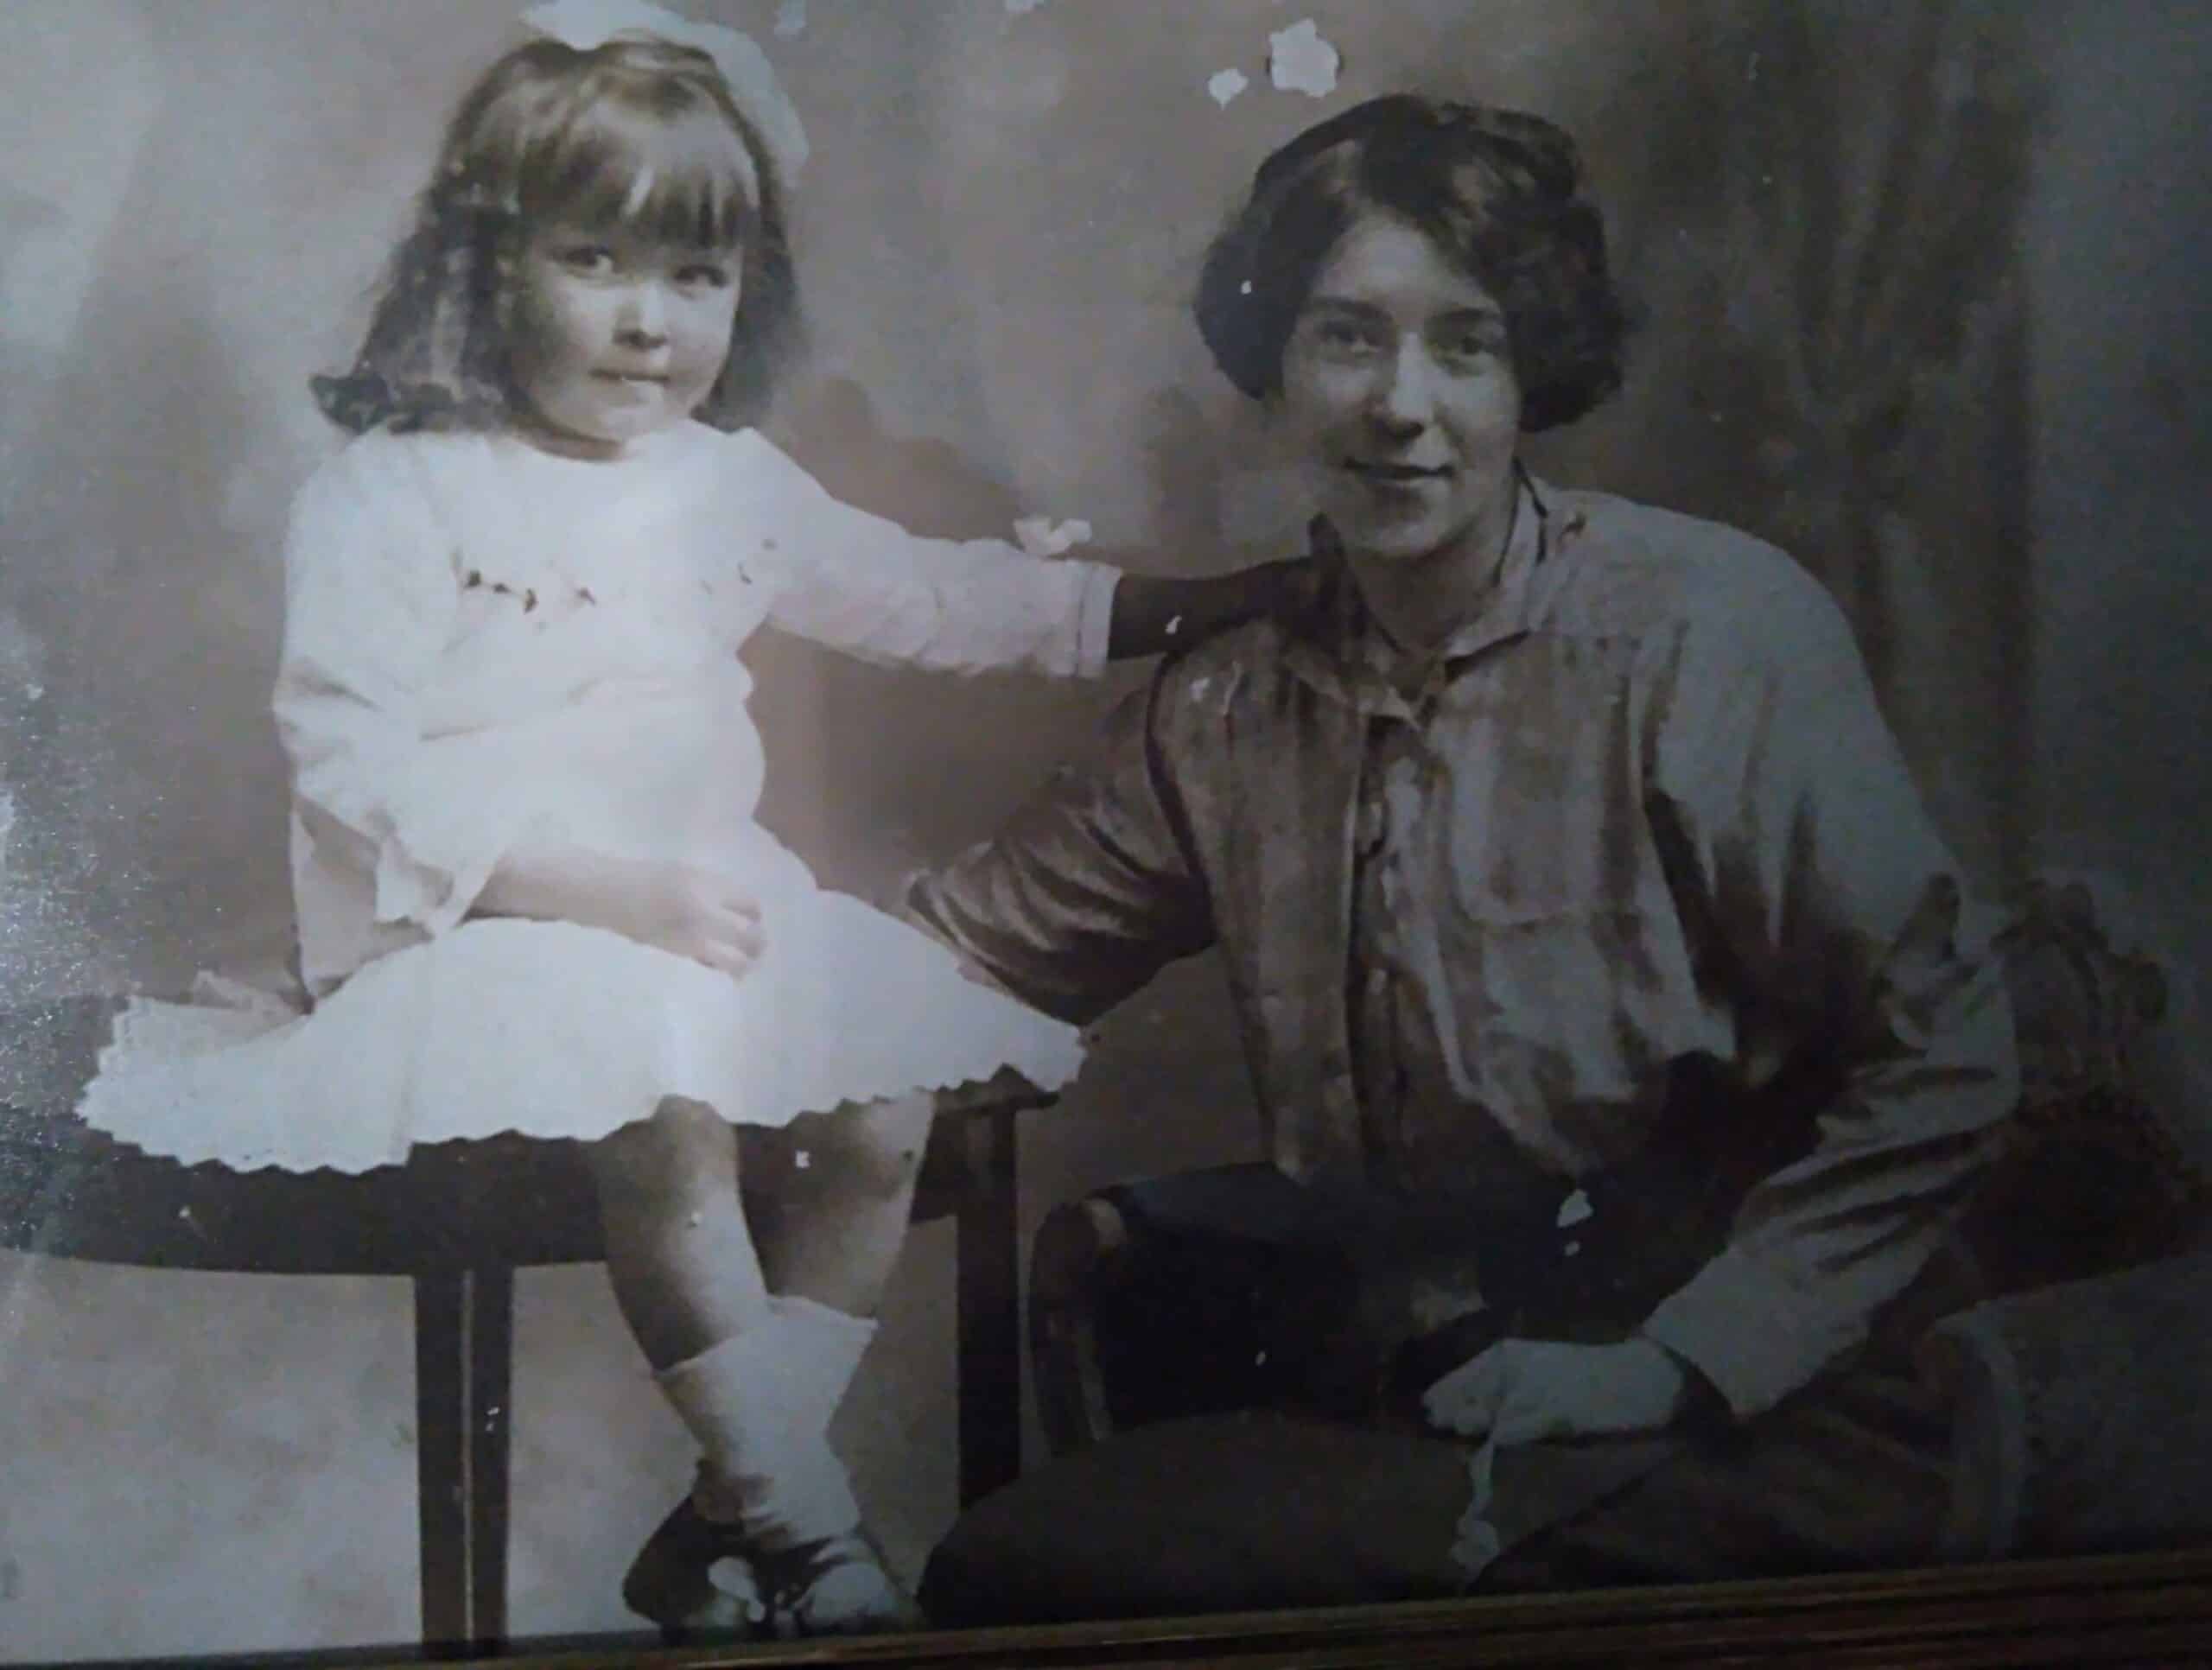 Julie Mamos oldefar (til højre) med Julies bedstemor som ung pige. Foto farvelagt og forbedret af MyHeritage.